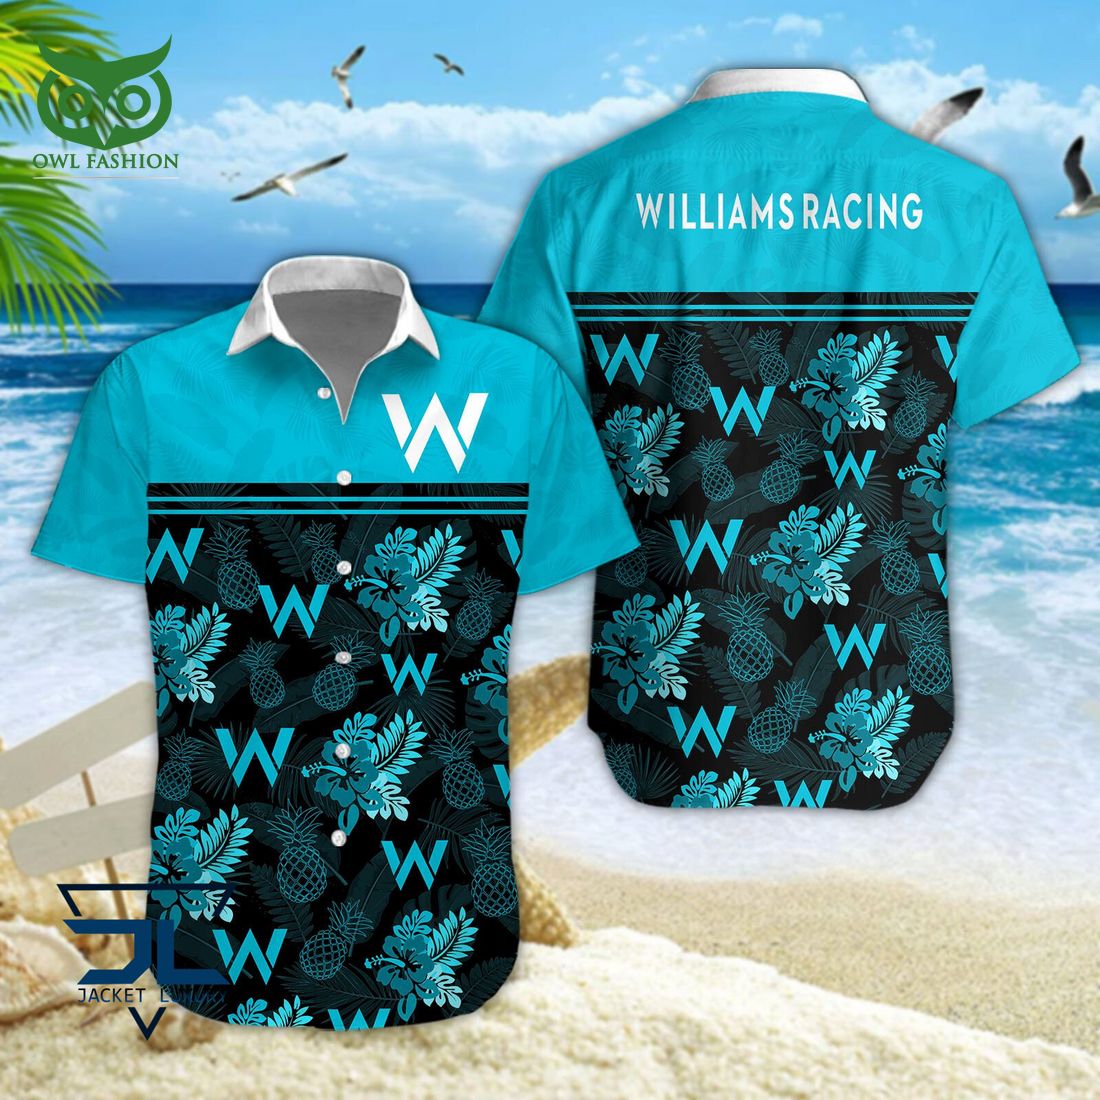 williams racing new f1 hawaiian shirt 1 Ob3gk.jpg